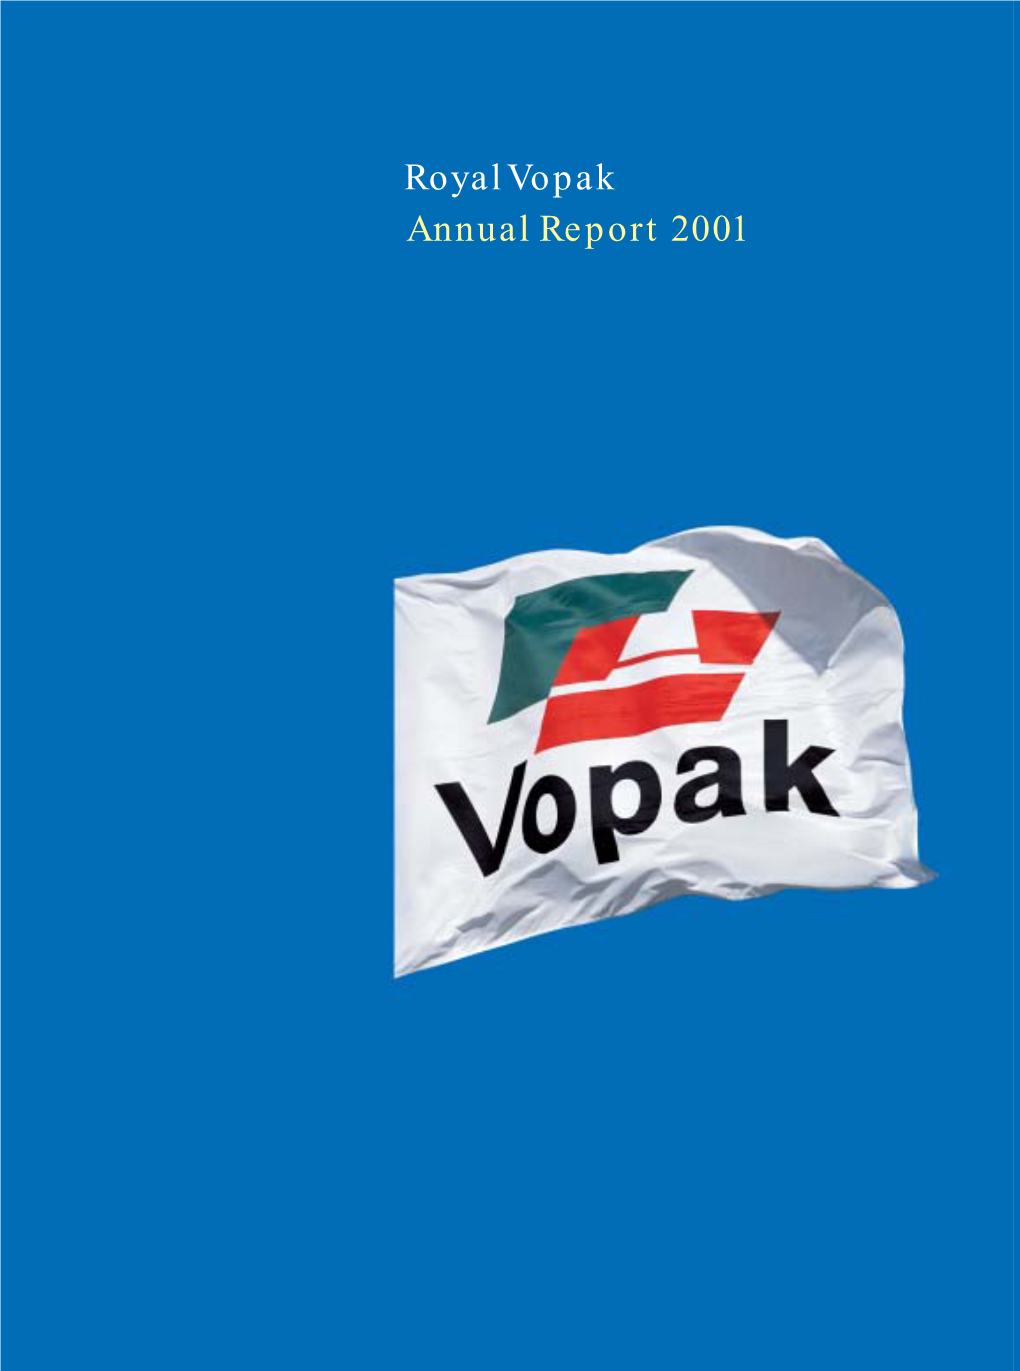 Royal Vopak Annual Report 2001 Key Numbers